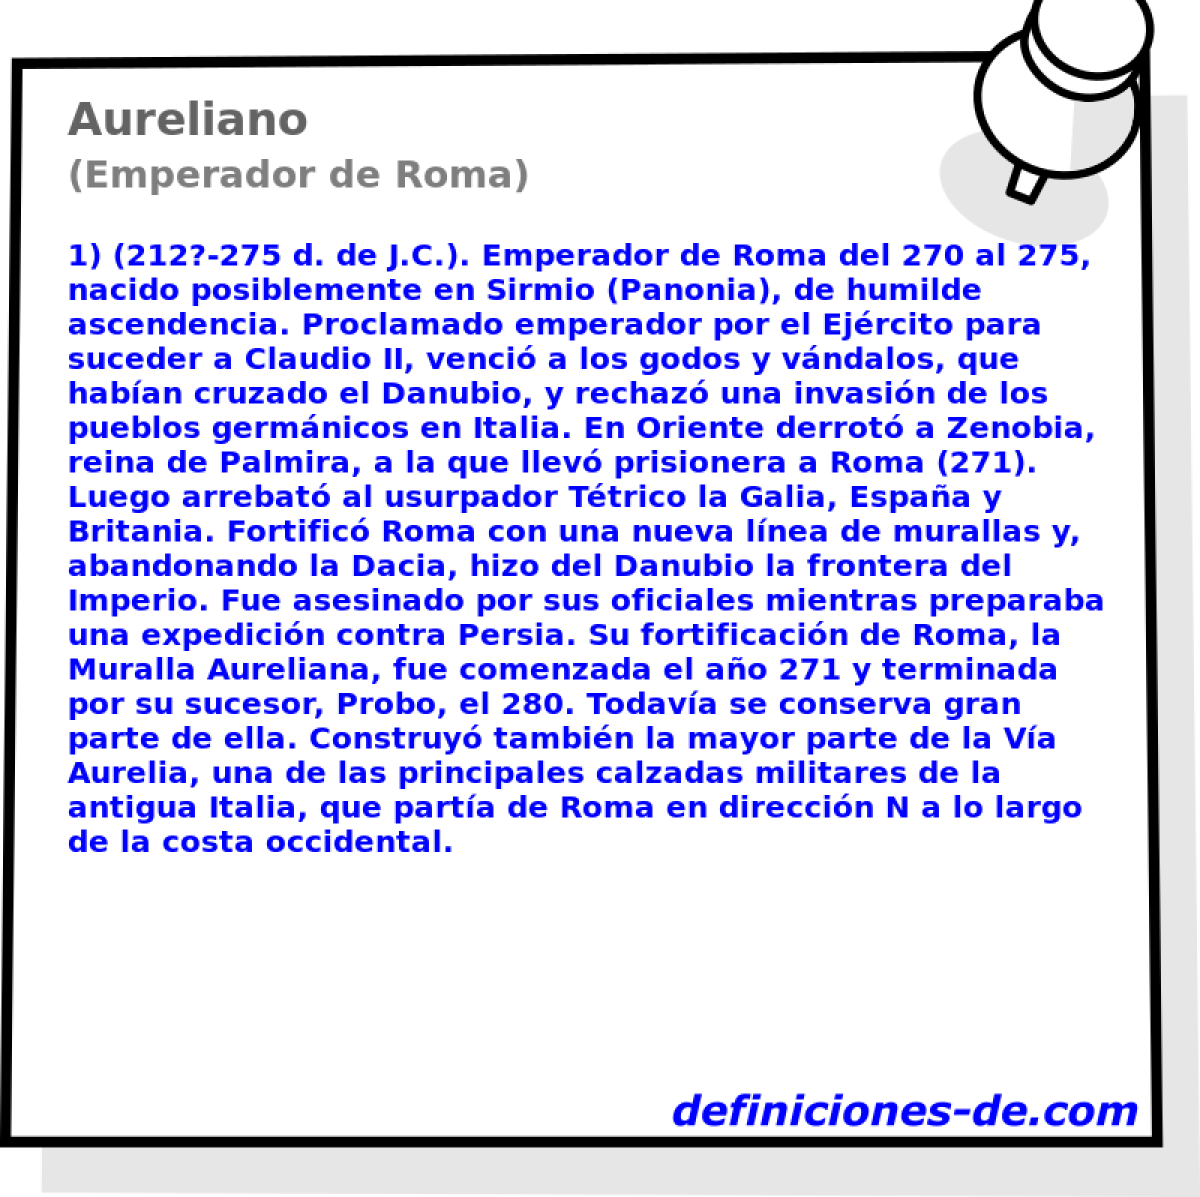 Aureliano (Emperador de Roma)